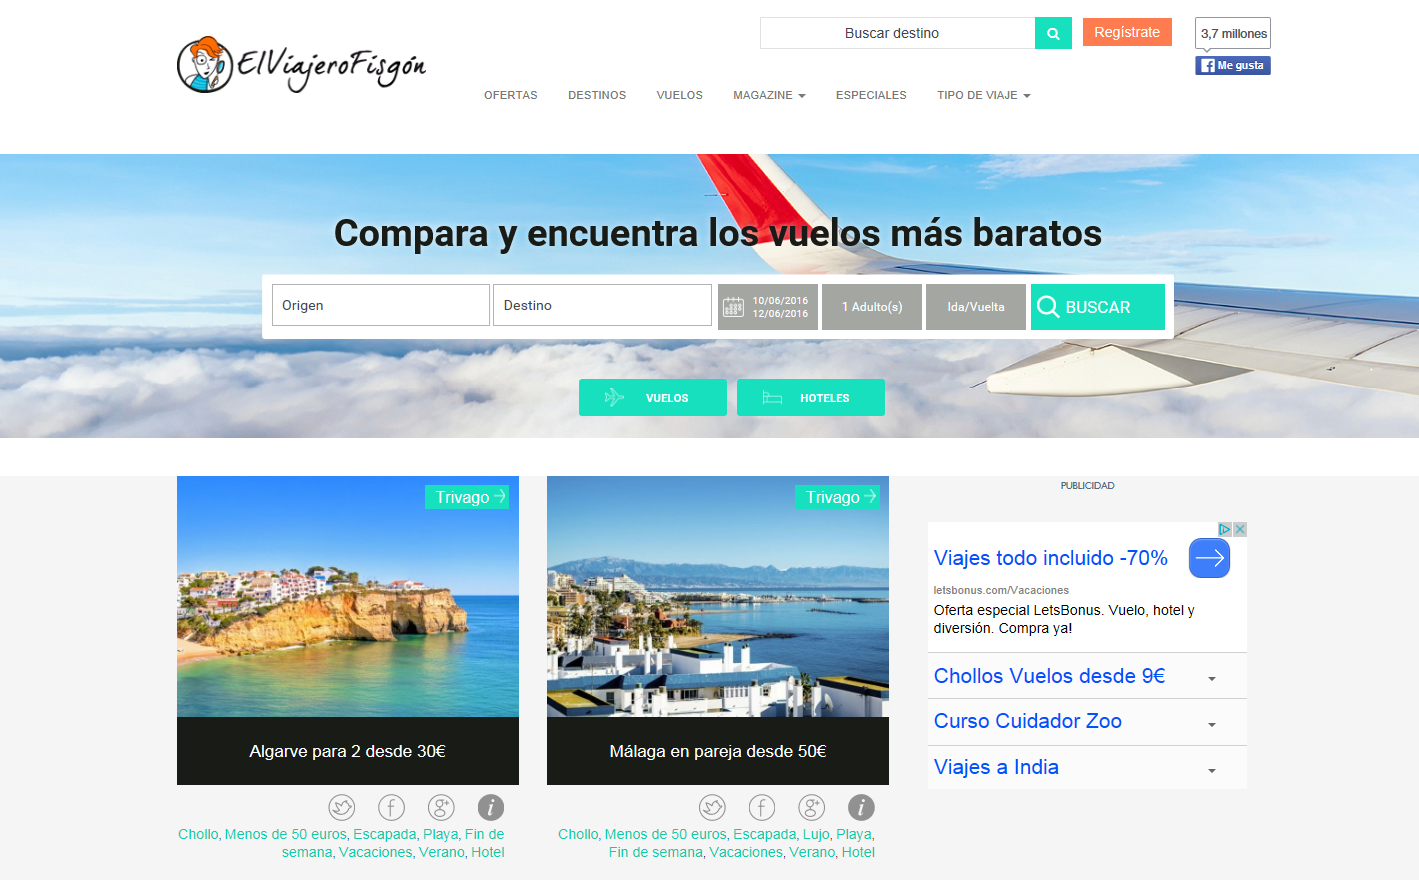 veredicto fácilmente Mercurio Las 21 mejores webs de viajes para organizar tus vacaciones | MDirector